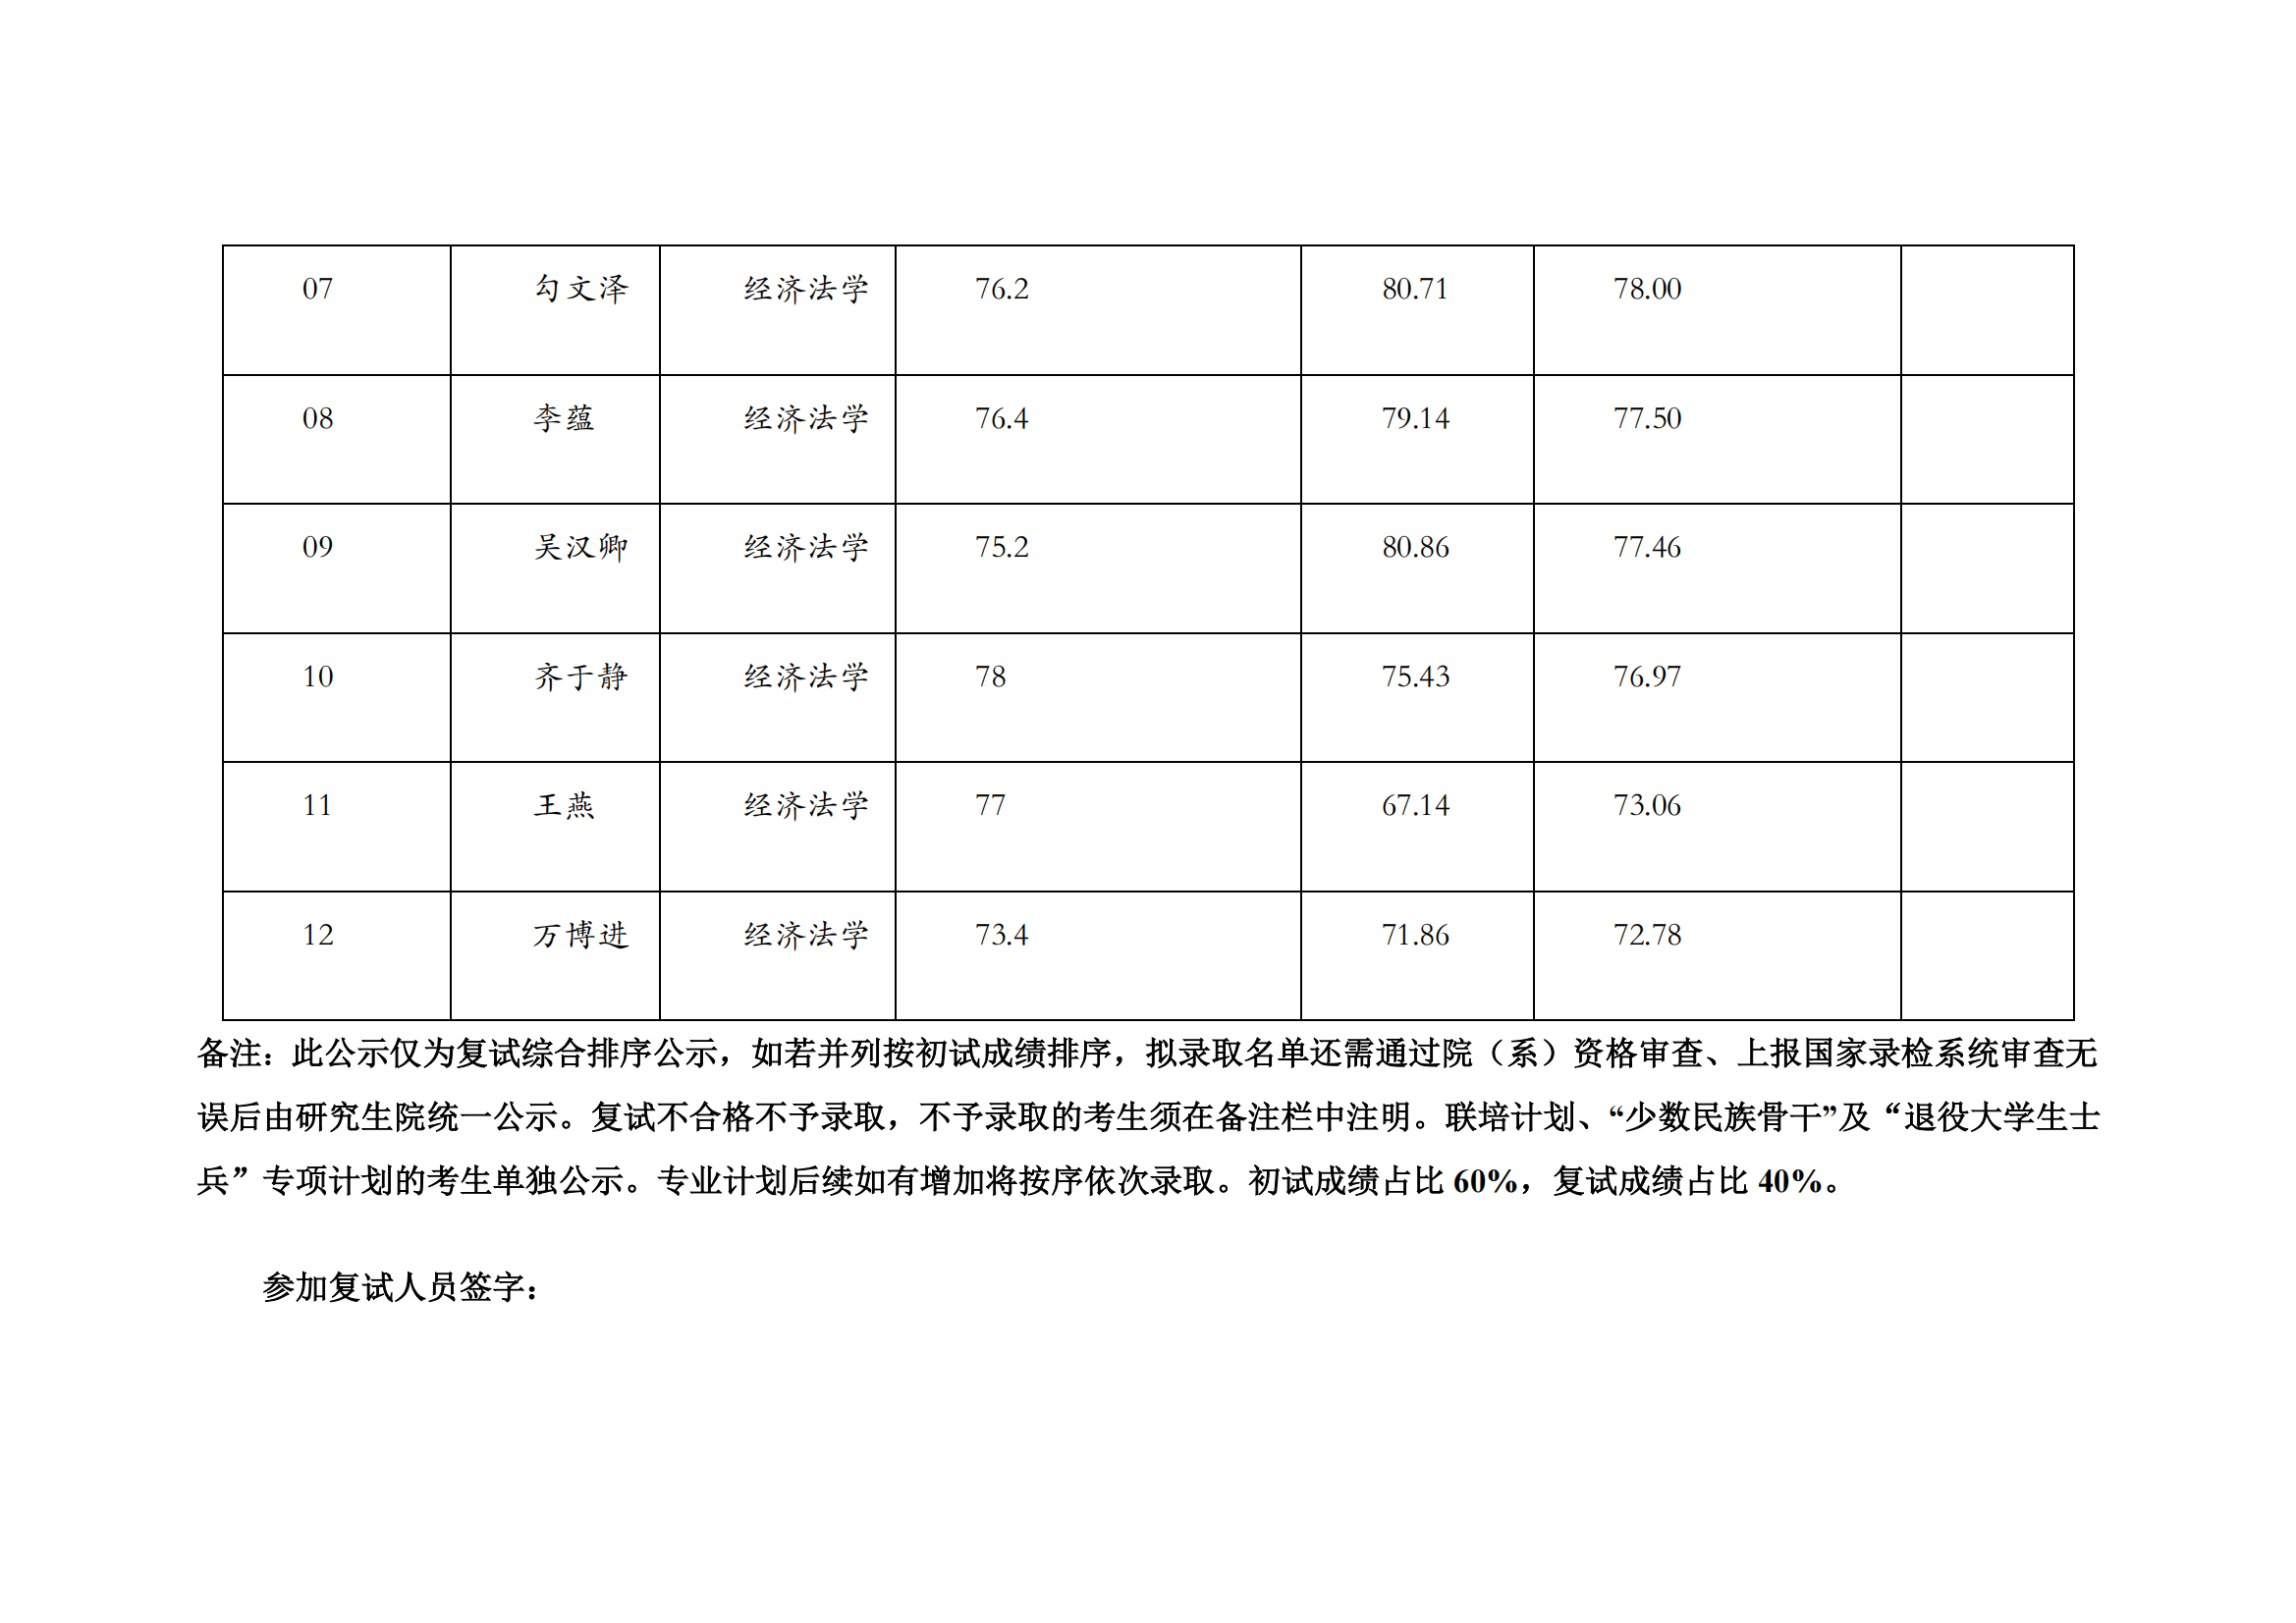 郑州大学 2022 年硕士研究生复试结果综合排序公示表【经济法】_01.png